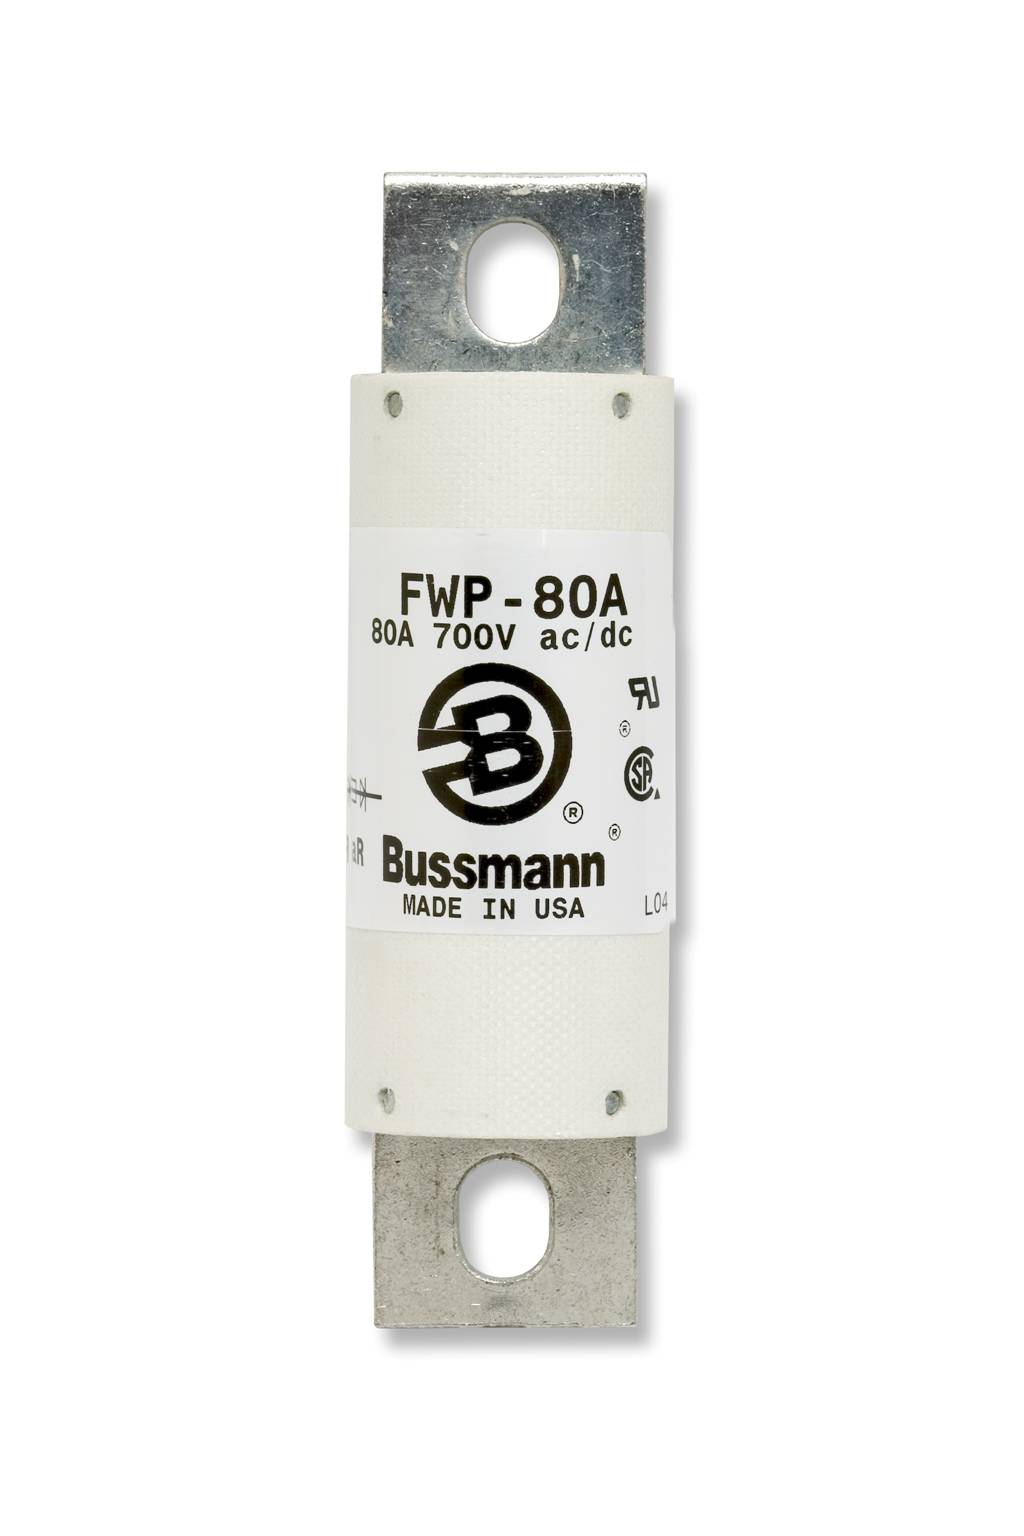 Part # FWP-1200A  Manufacturer BUSSMANN  Product Type 700 Volt Fuse